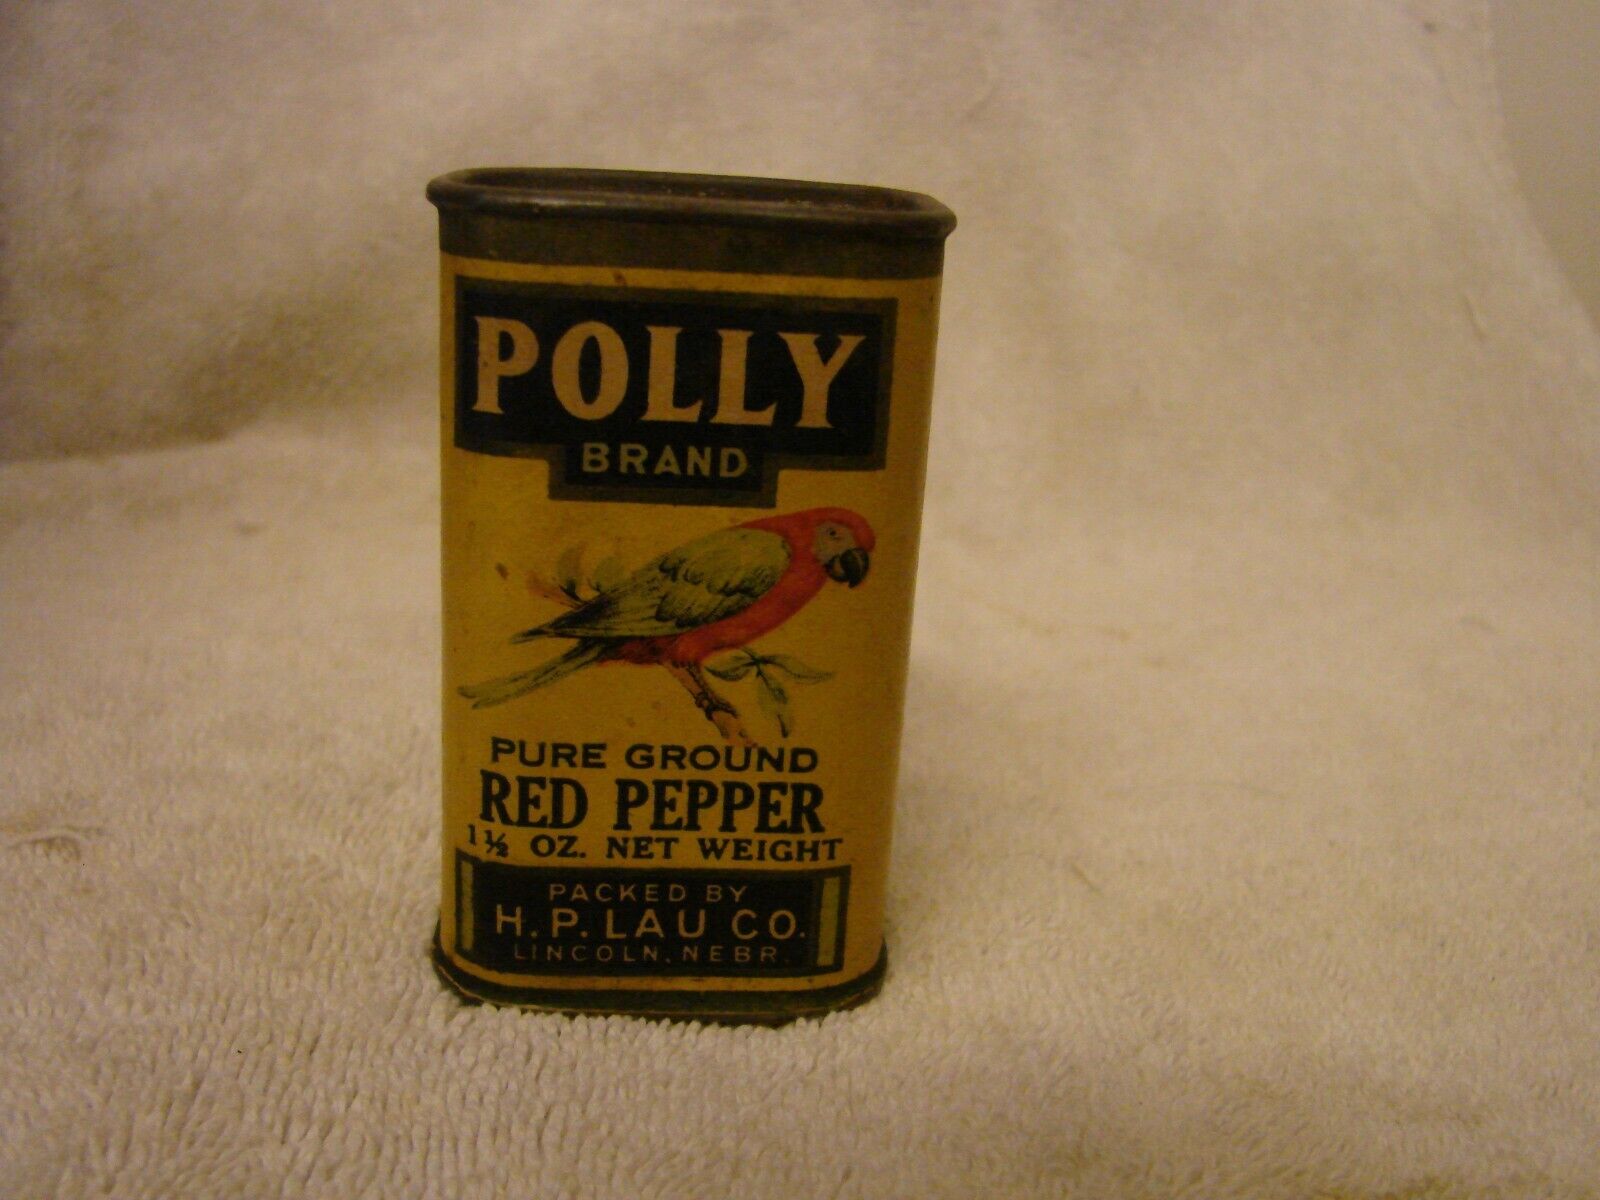 POLLY BRAND RED PEPPER TIN1-1/2 OZ. L.P. LAU LINCOLN NEBRASKA EX. GRAPHICS RARE